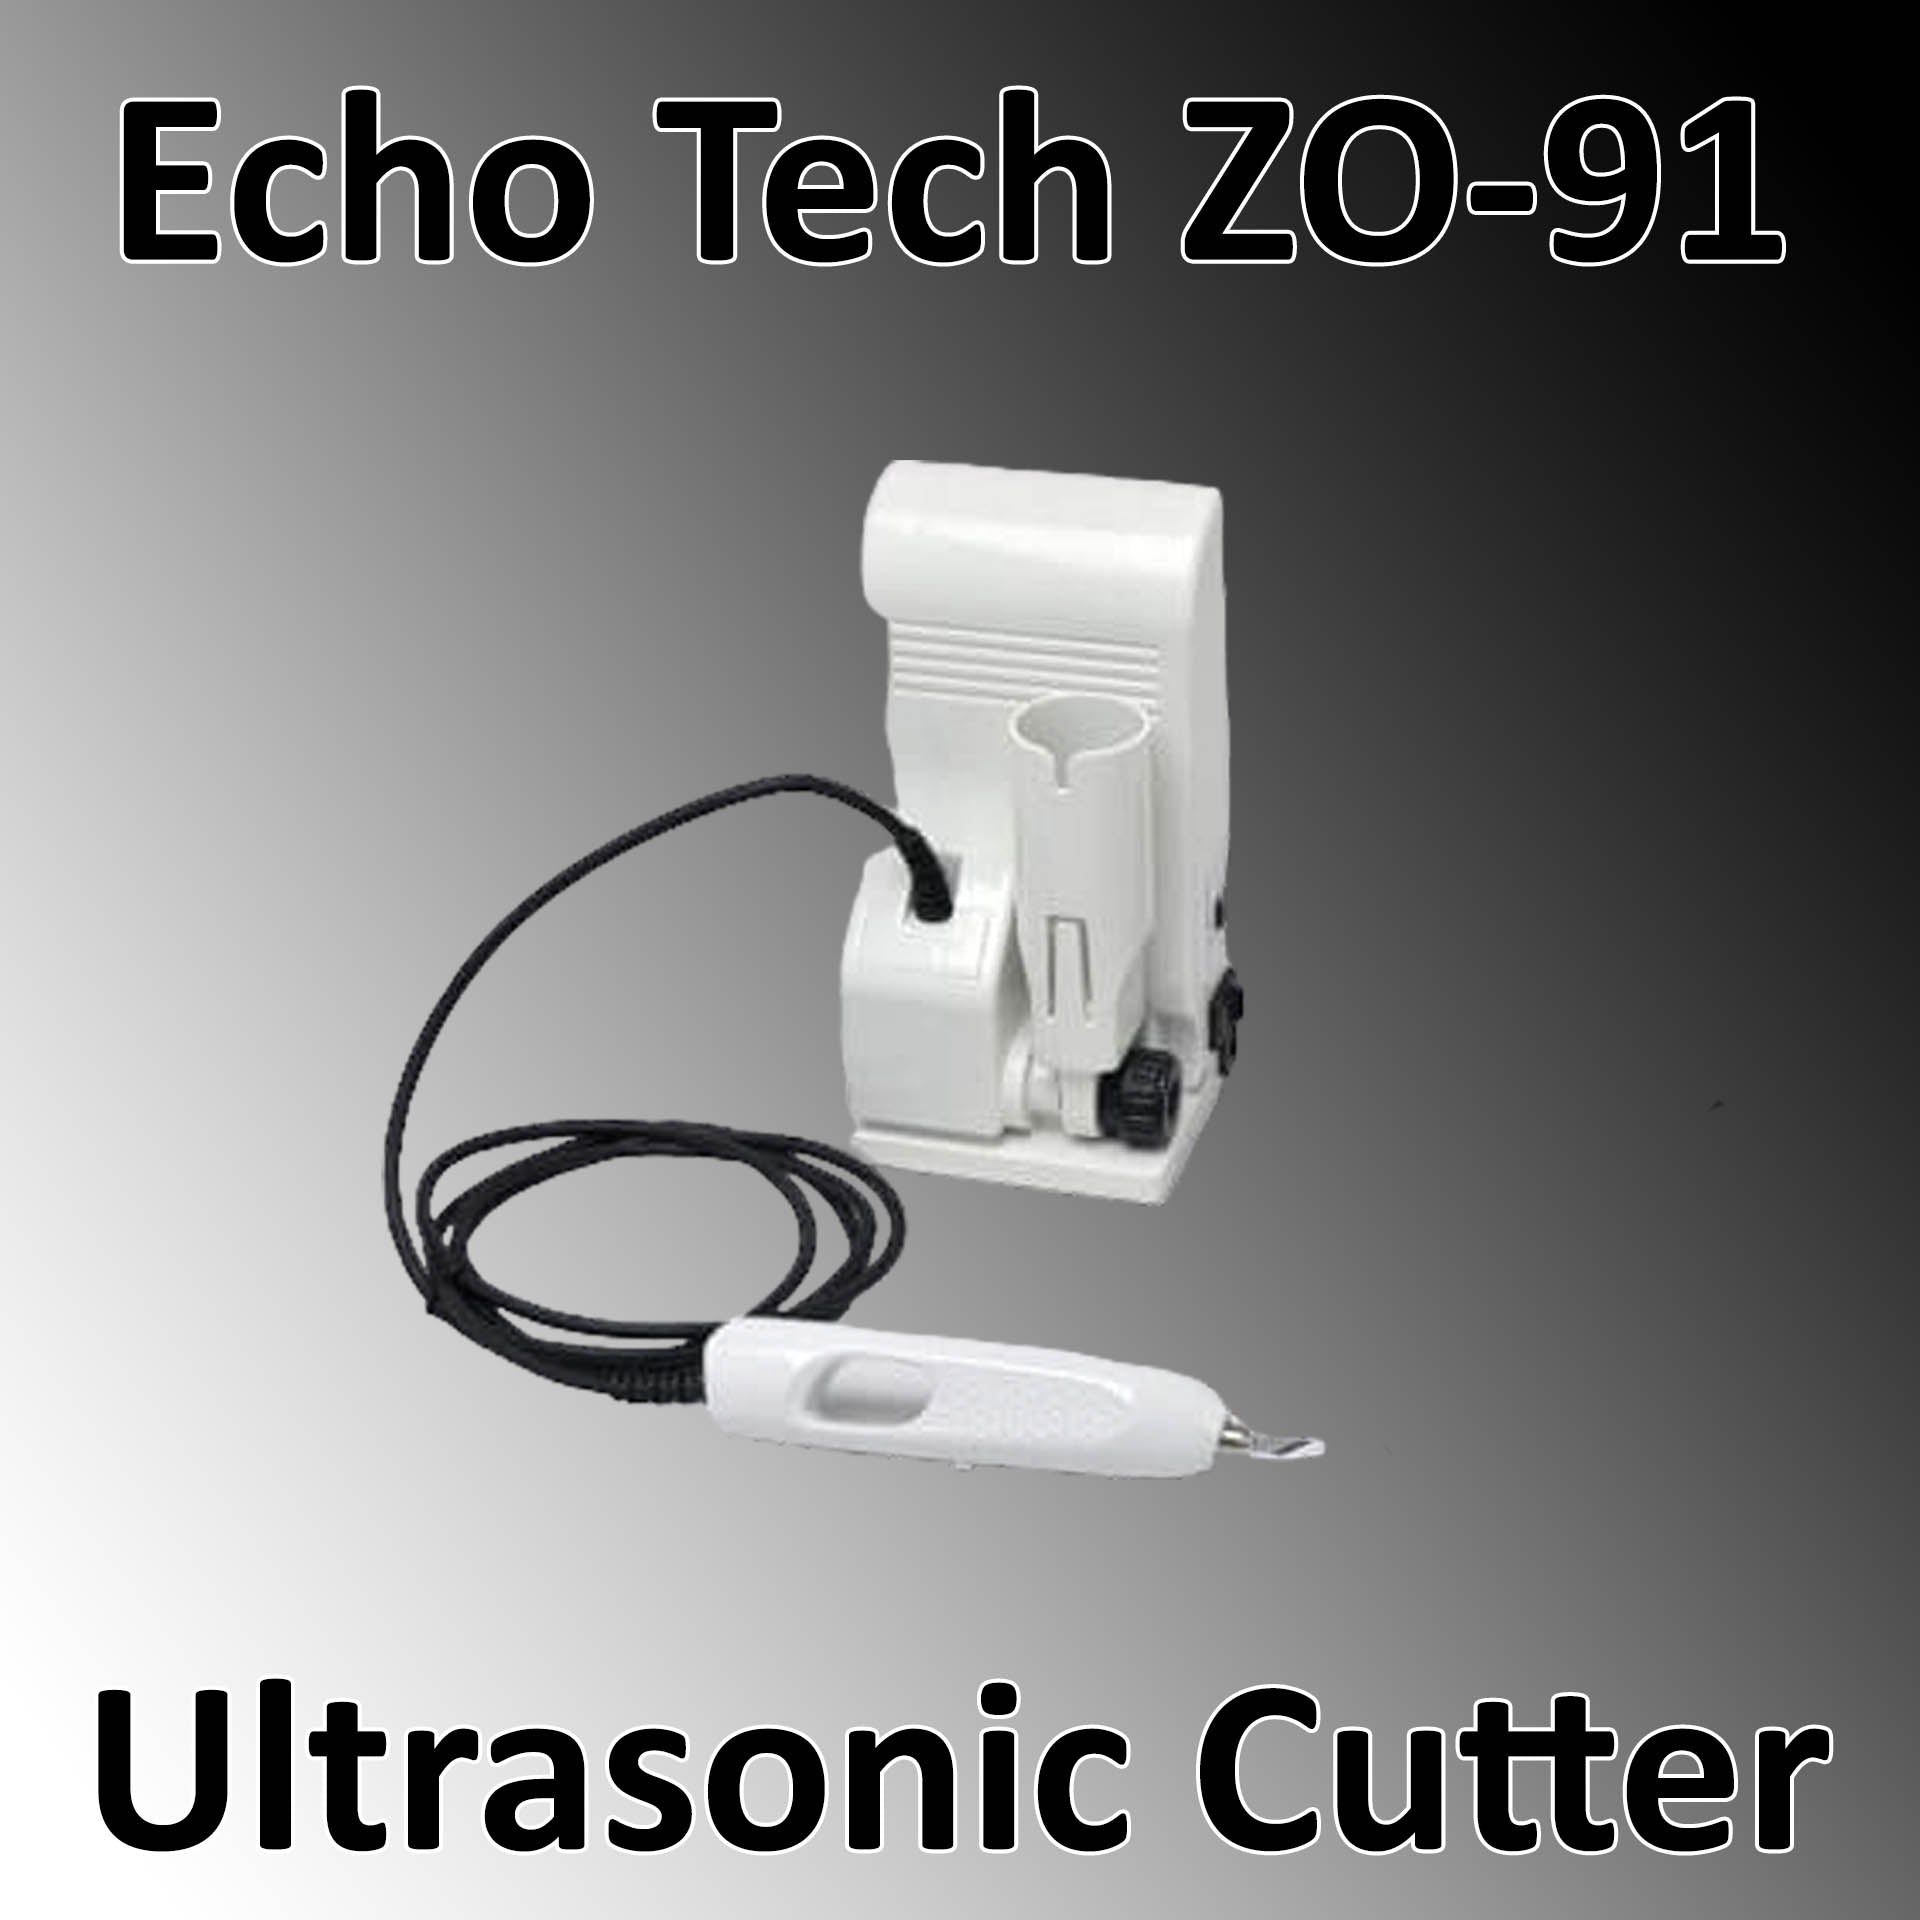 Echo Tech ZO-91 Ultrasonic Cutter – Next Level Neo